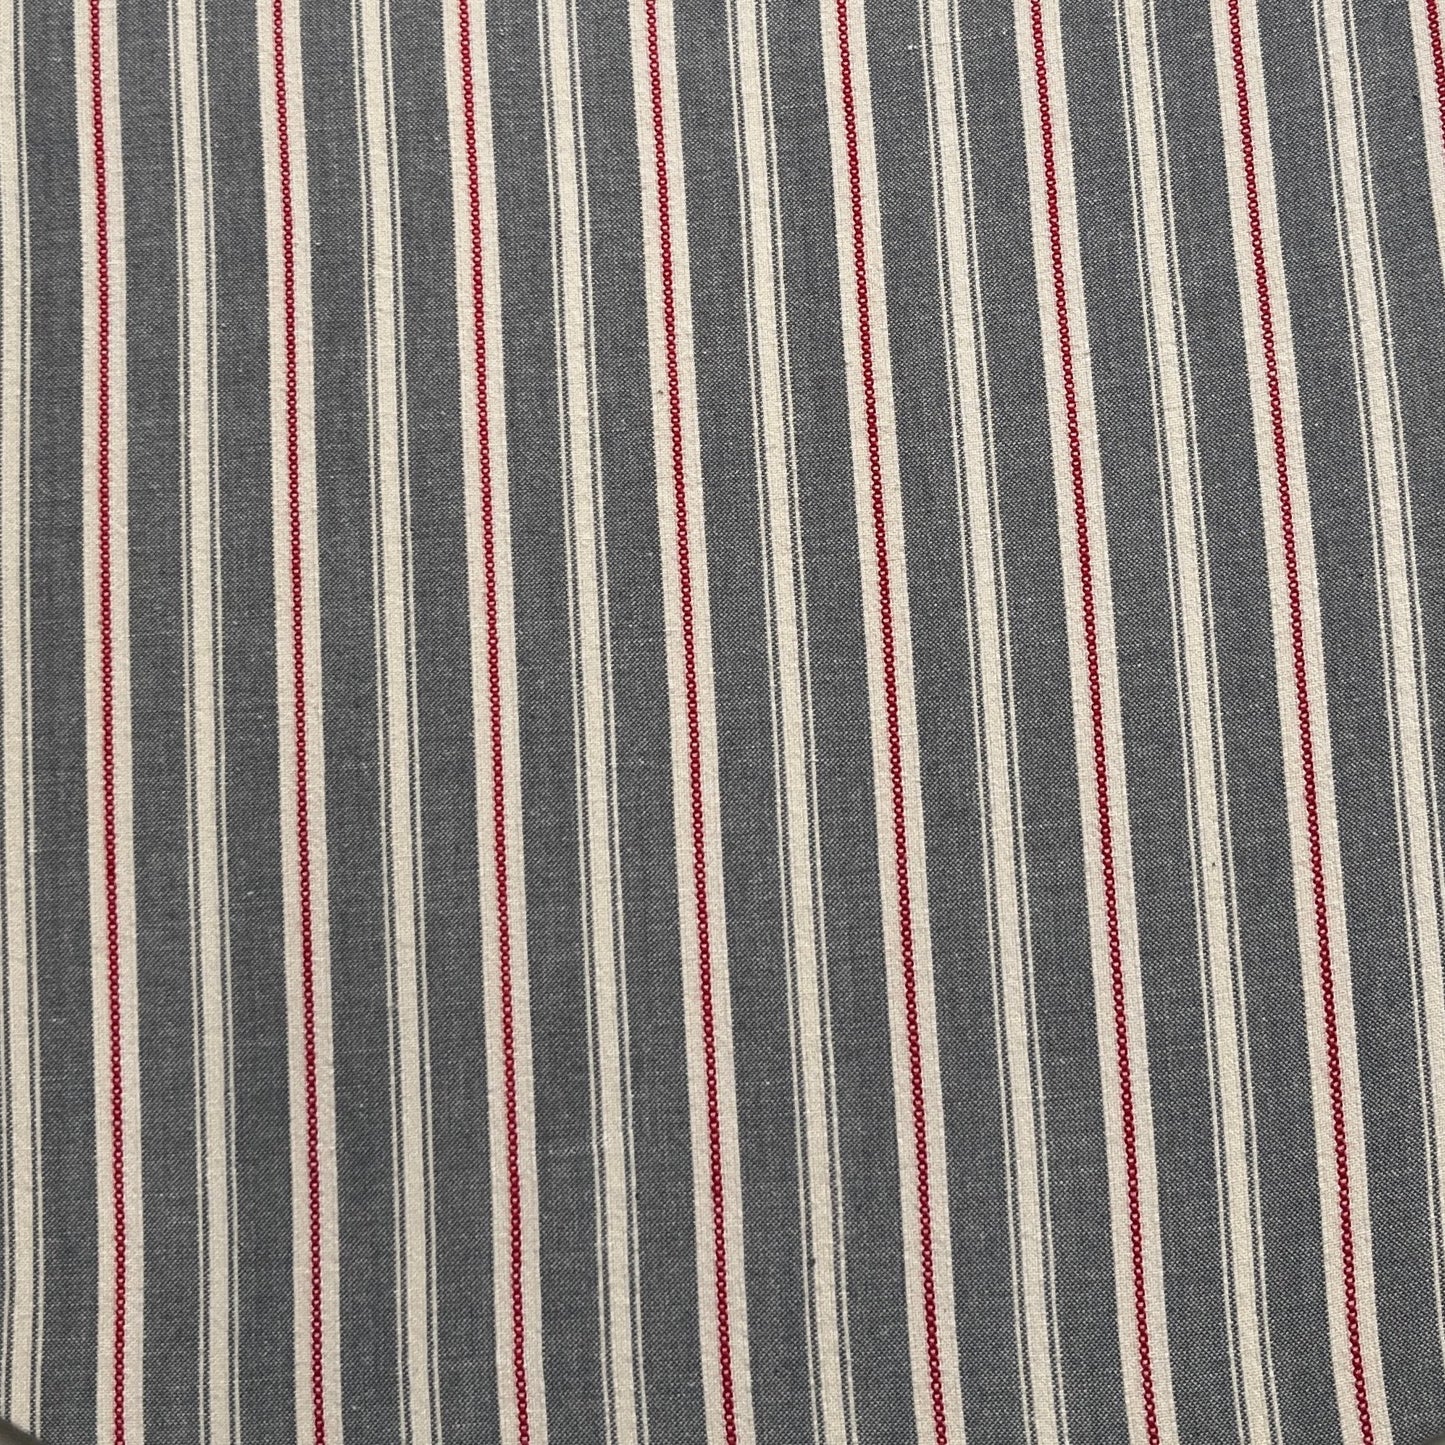 Abnehmbarer Bezug für Tischsets - Stripes Grau/Weiß/Rot